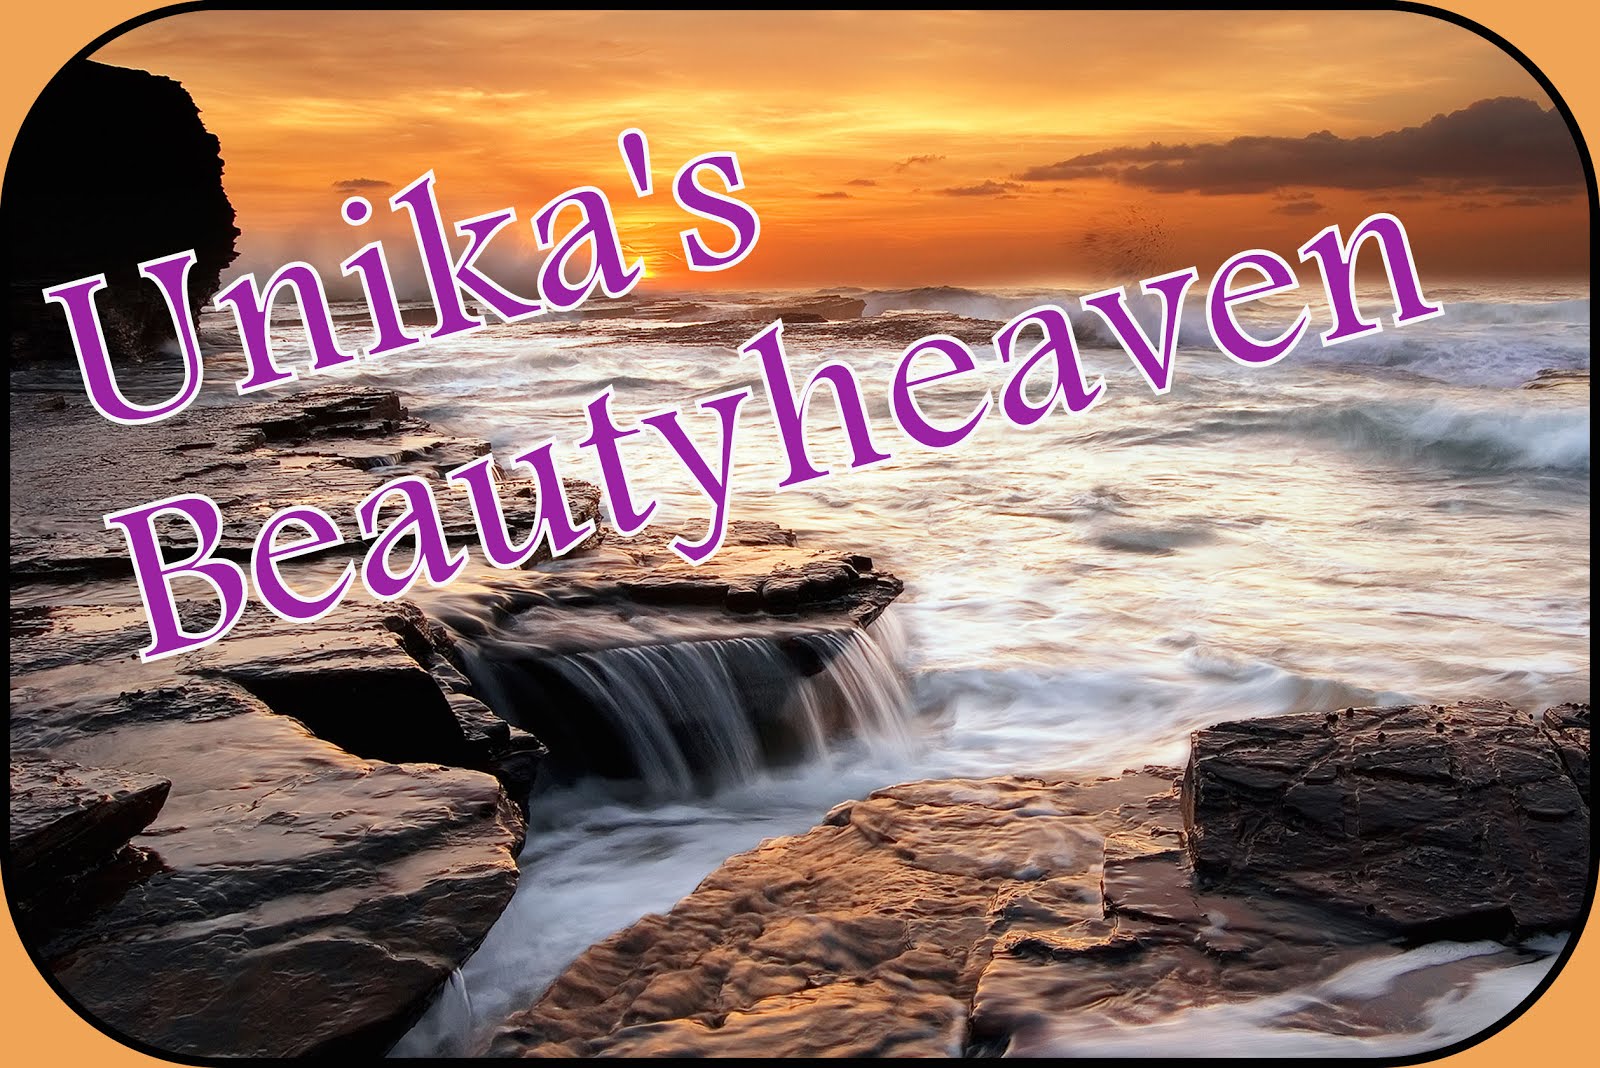 Unika's Beautyheaven